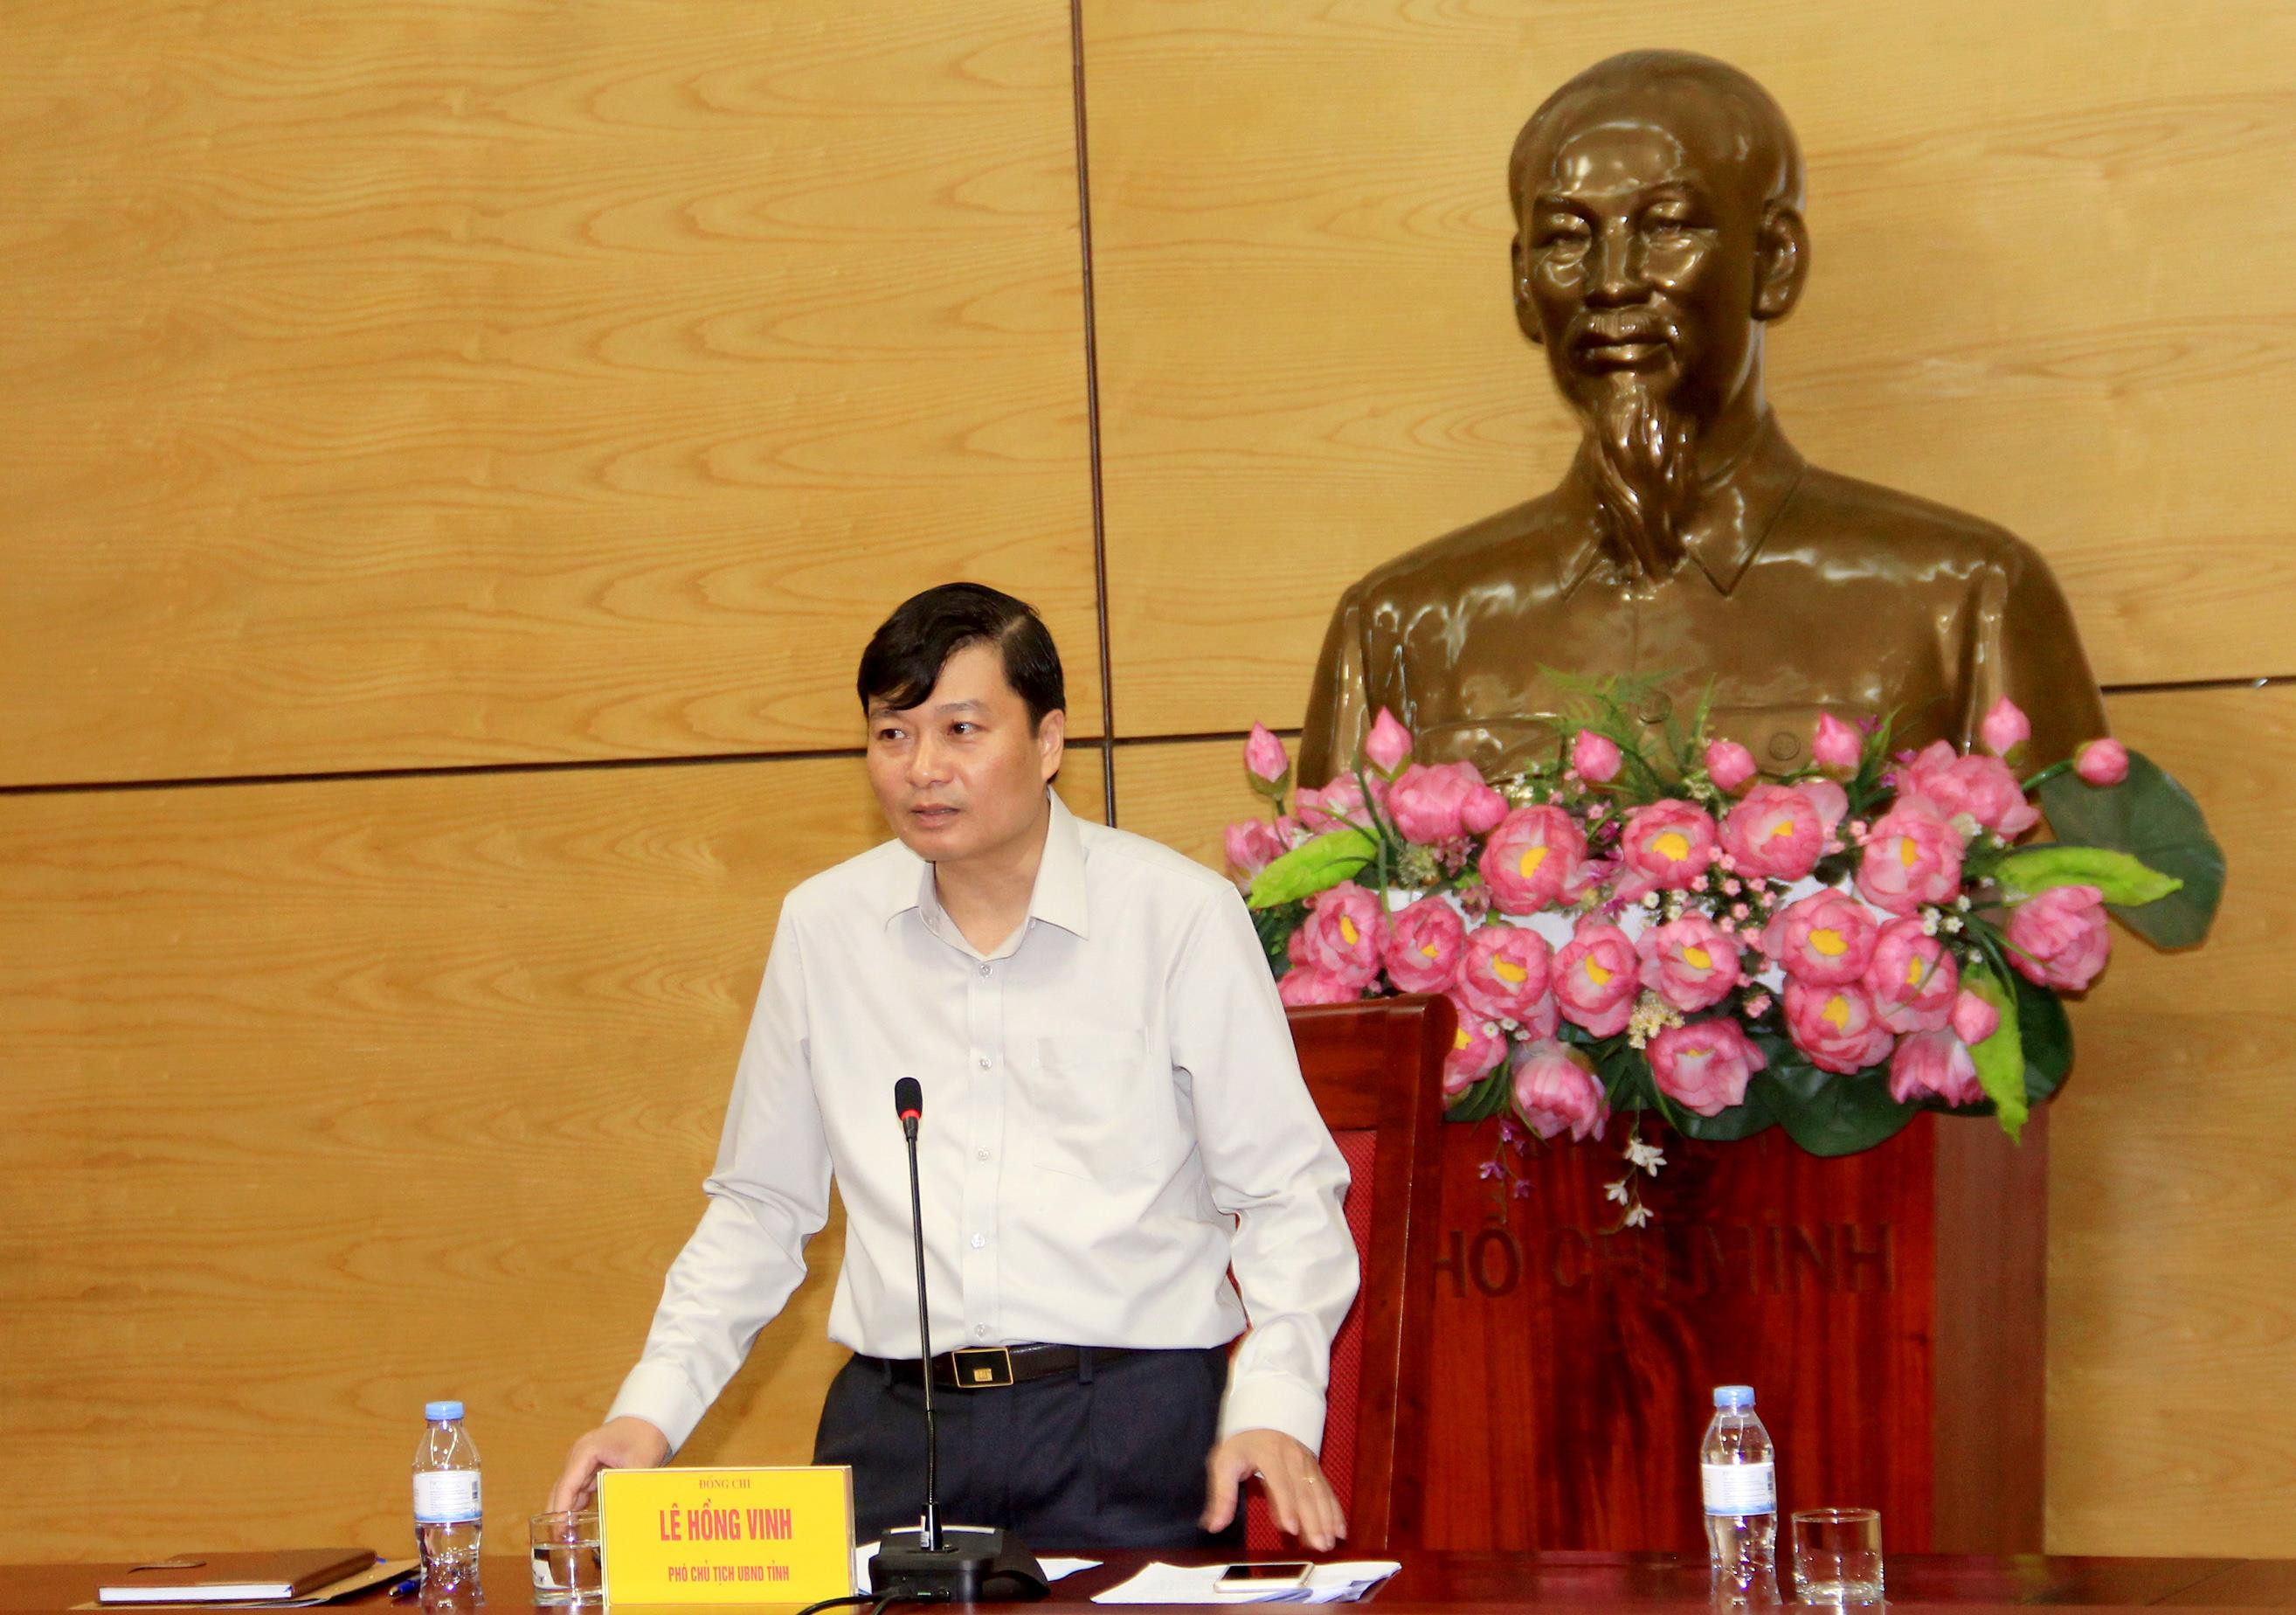 Đồng chí Lê Hồng Vinh - Phó Chủ tịch UBND tỉnh đề nghị cơ quan soạn thảo đề án làm rõ vai trò quản lý nhà nước đối với các đối tượng được tha tù trước thời hạn có điều kiện. Ảnh: P.B